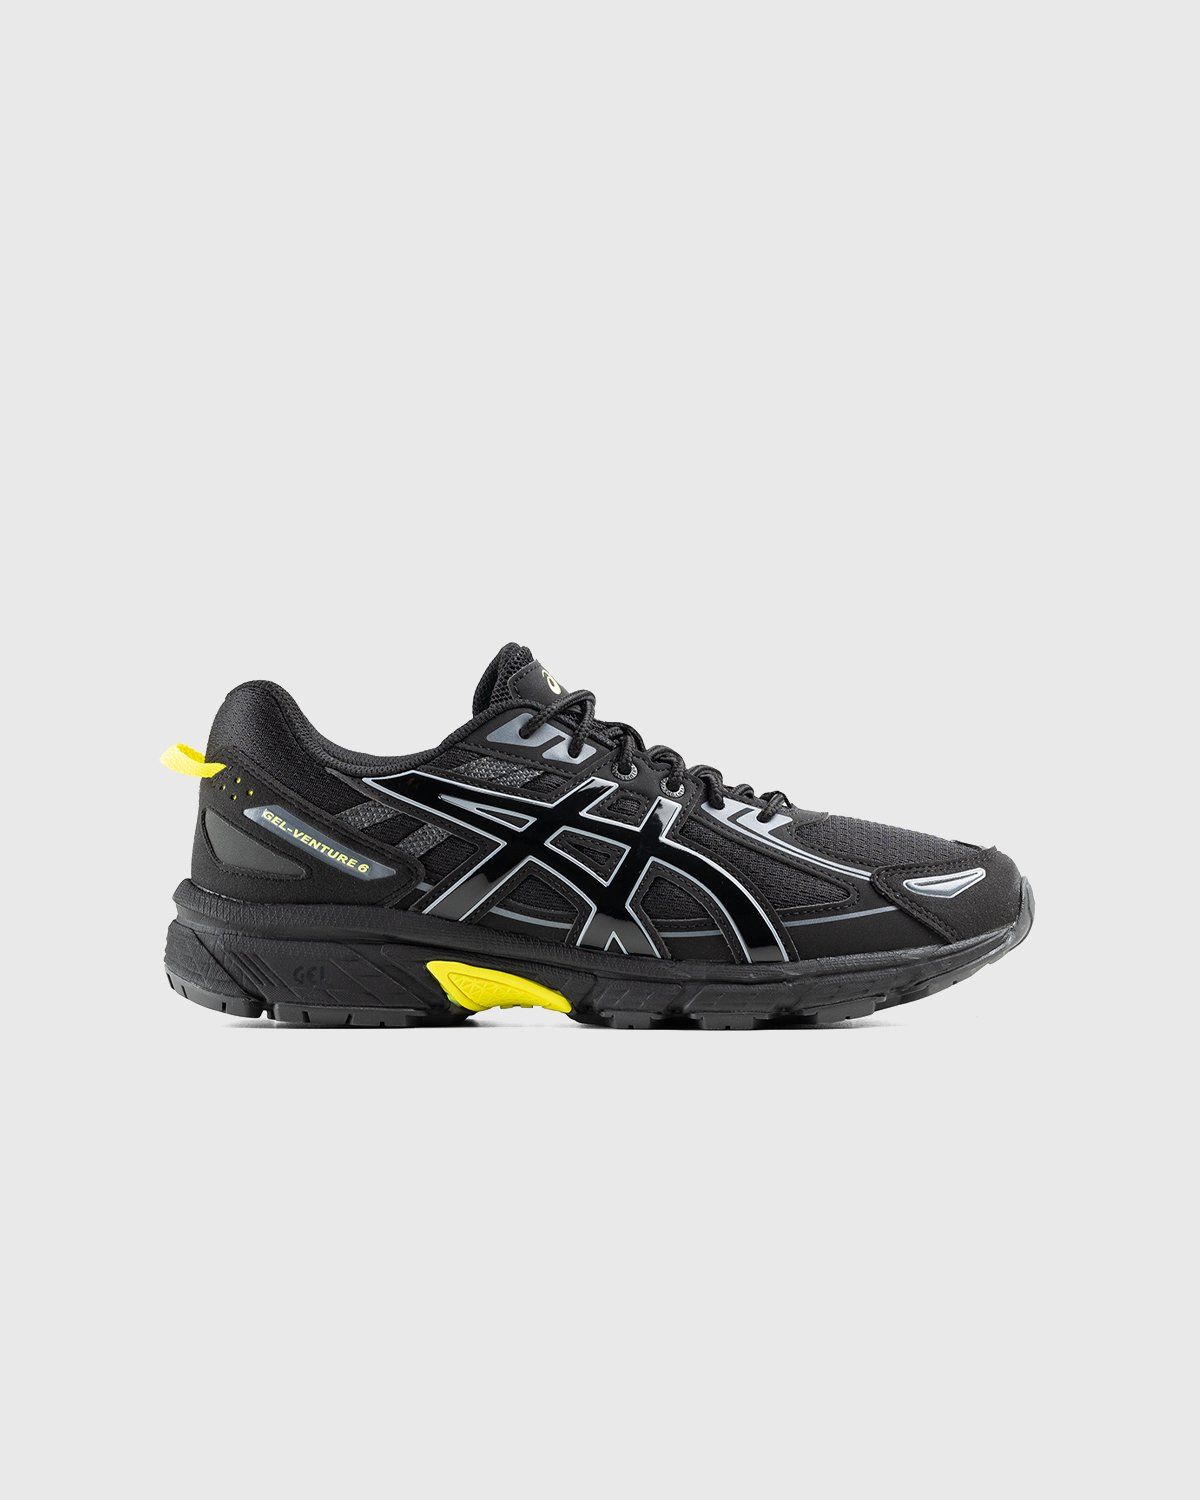 asics – Gel-Venture 6 Black/Black - Sneakers - Black - Image 1